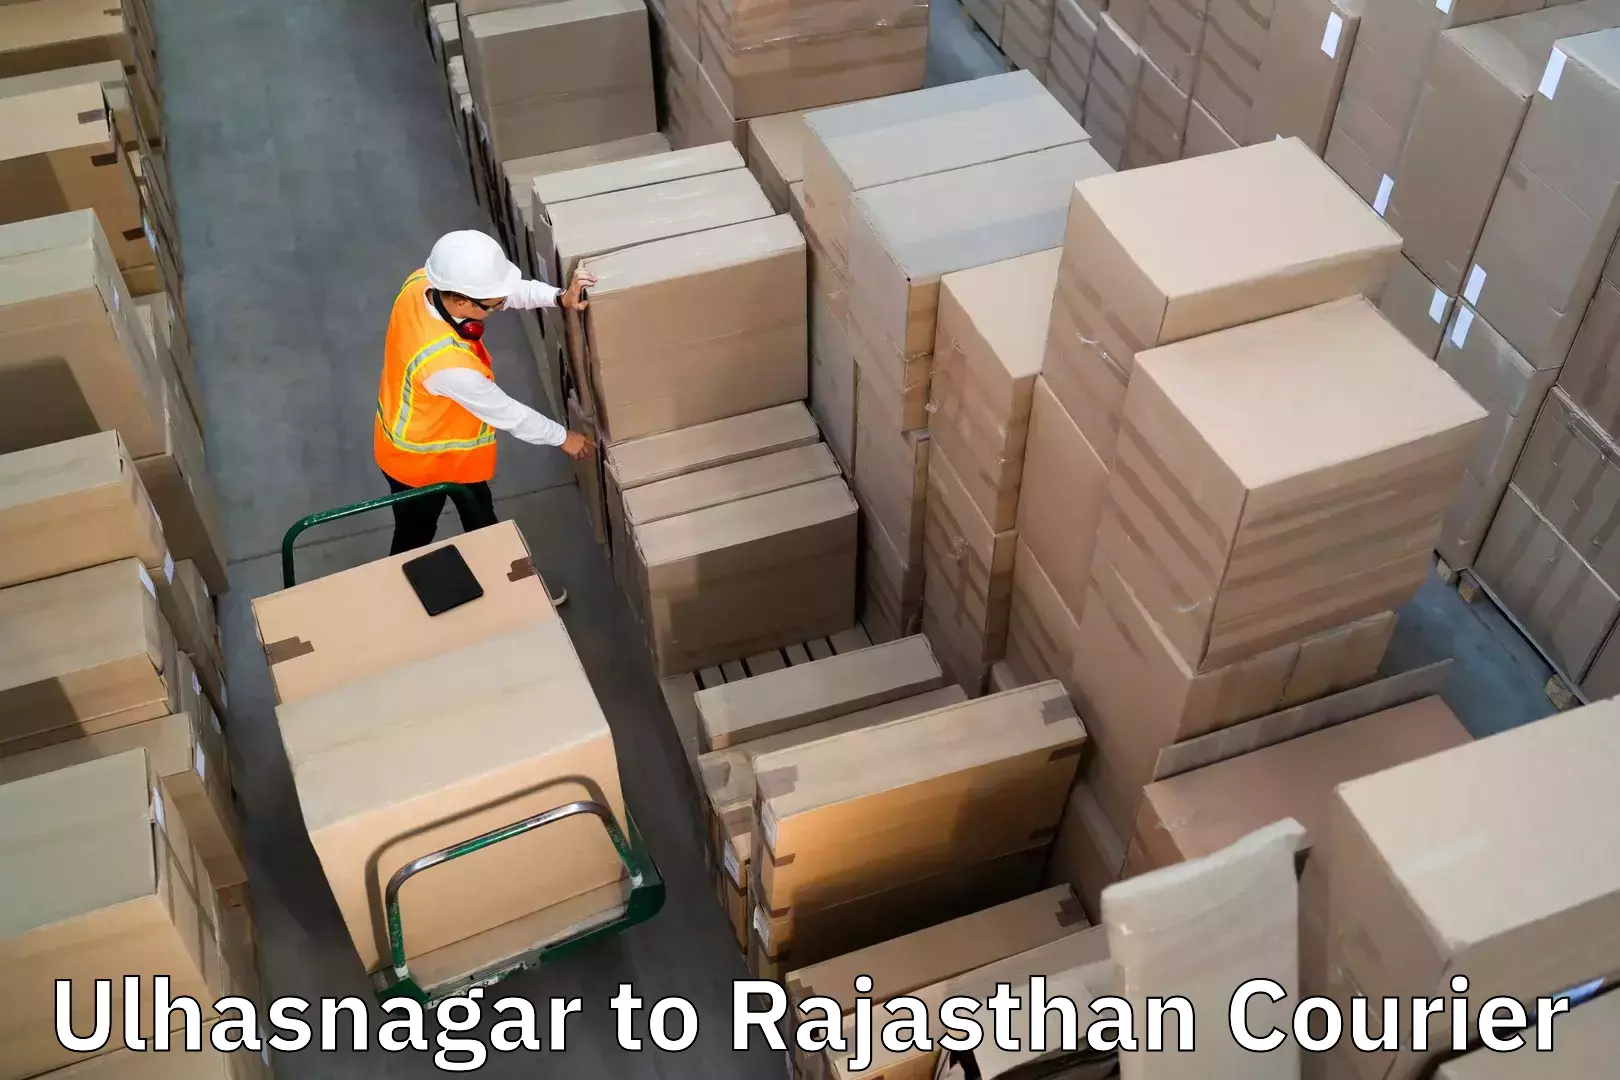 Baggage shipping service Ulhasnagar to Parbatsar